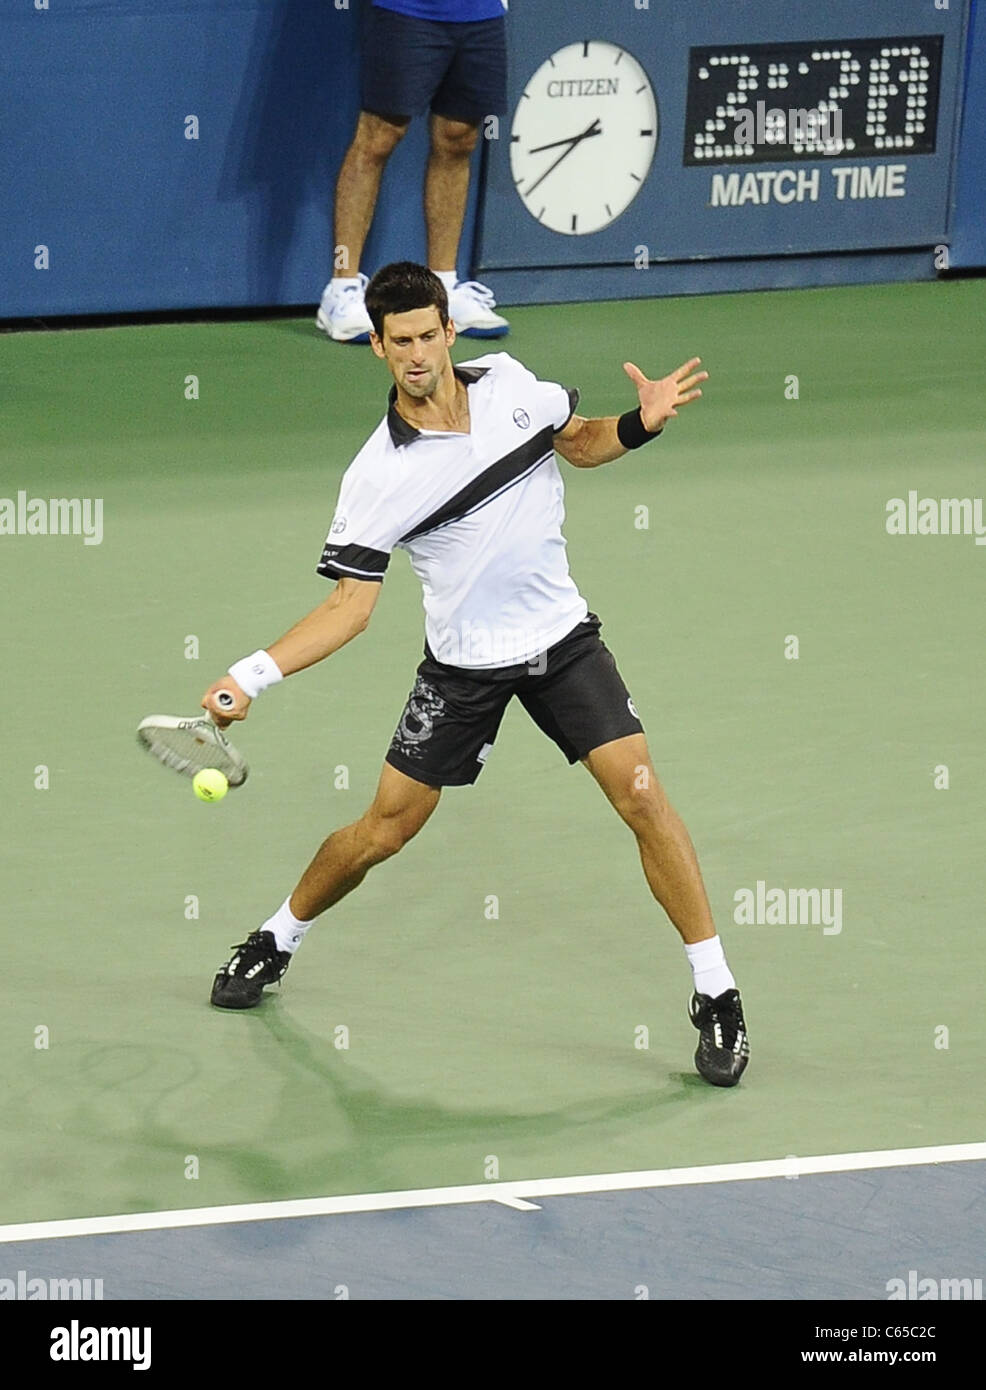 Novak Djokovic au tournoi de tennis US Open 2010 Finale Match masculin, Arthur Ashe Stadium, New York, NY Le 13 septembre 2010. Photo par : Rob riche/Everett Collection Banque D'Images